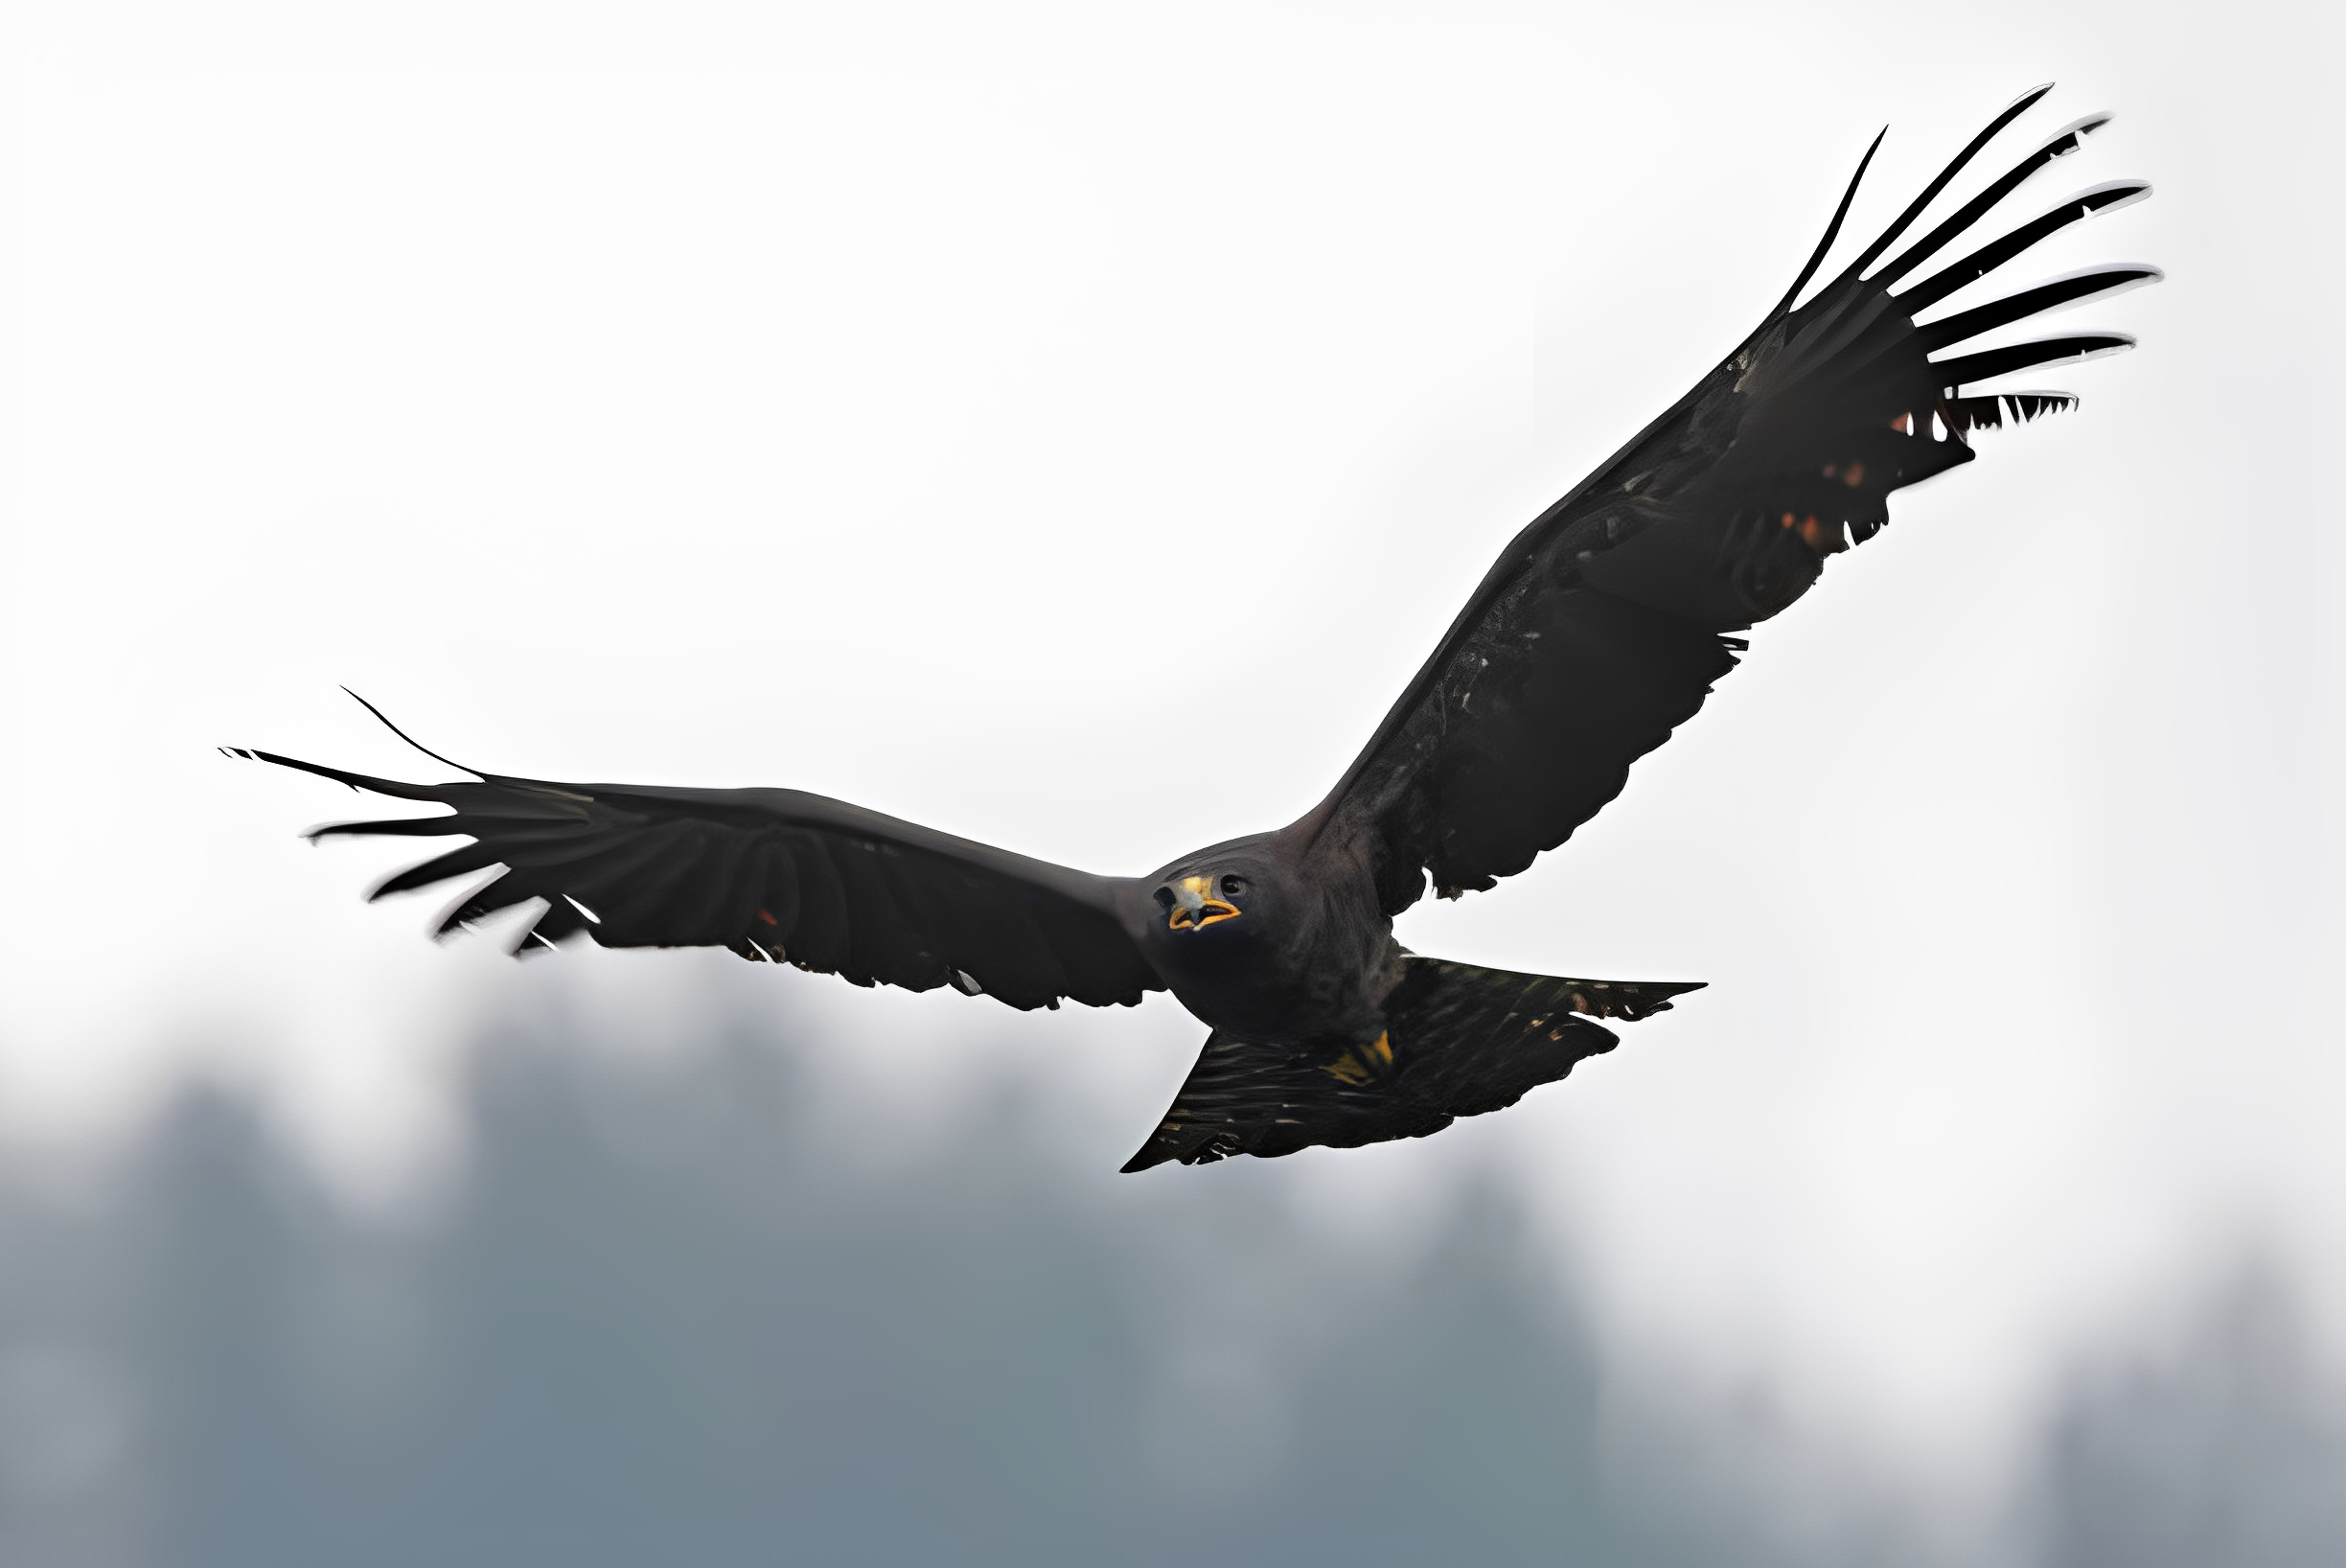 Verreaux eagle